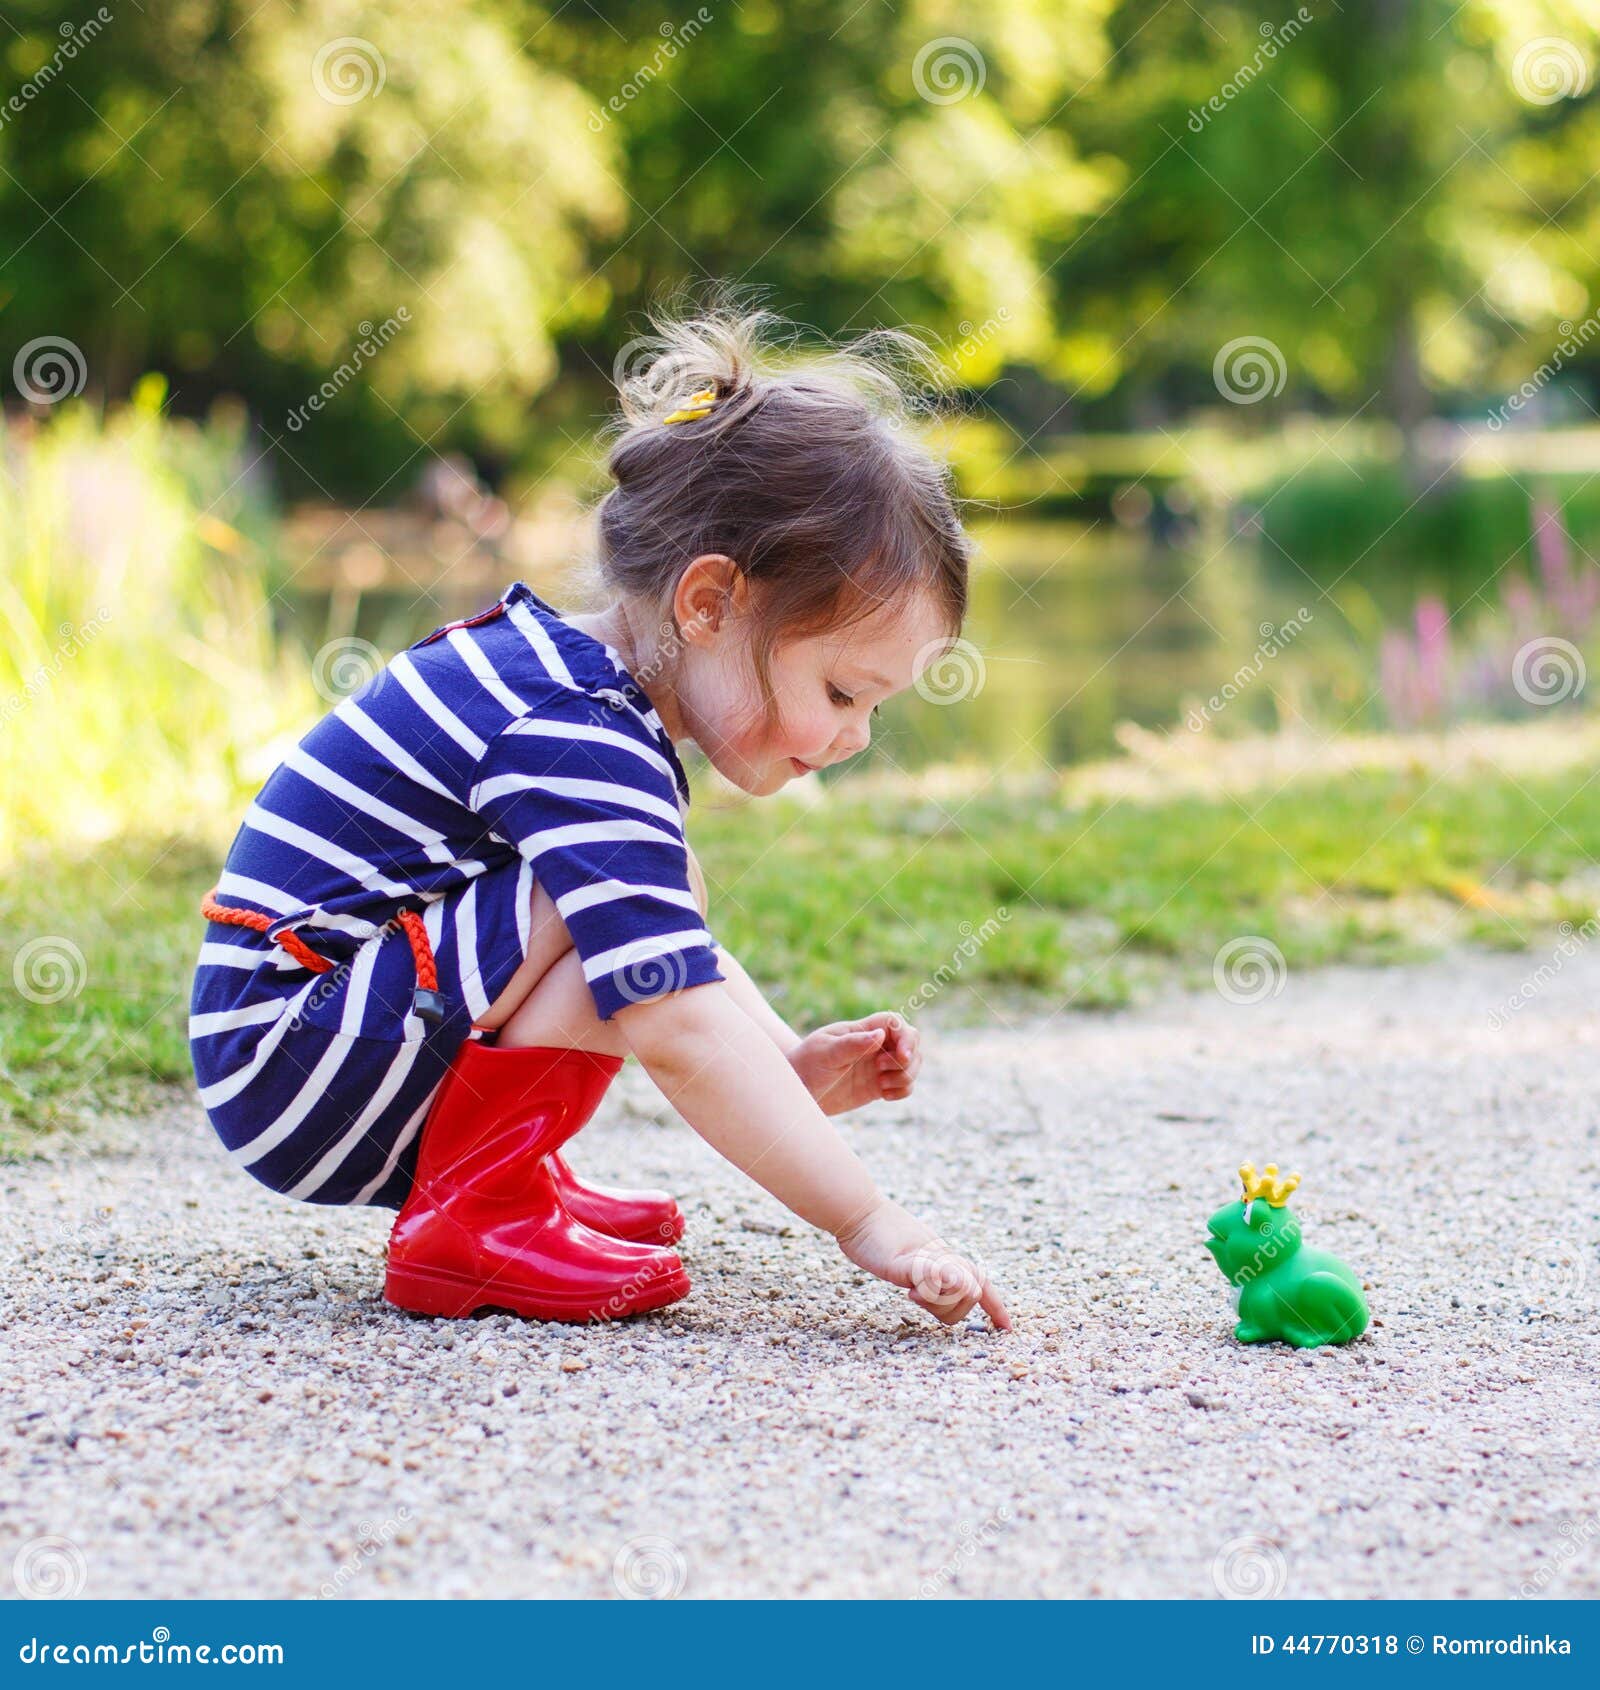 Όμορφο μικρό κορίτσι στις κόκκινες μπότες βροχής που παίζει με το  λαστιχένιο βάτραχο Στοκ Εικόνες - εικόνα από childhood: 44770318